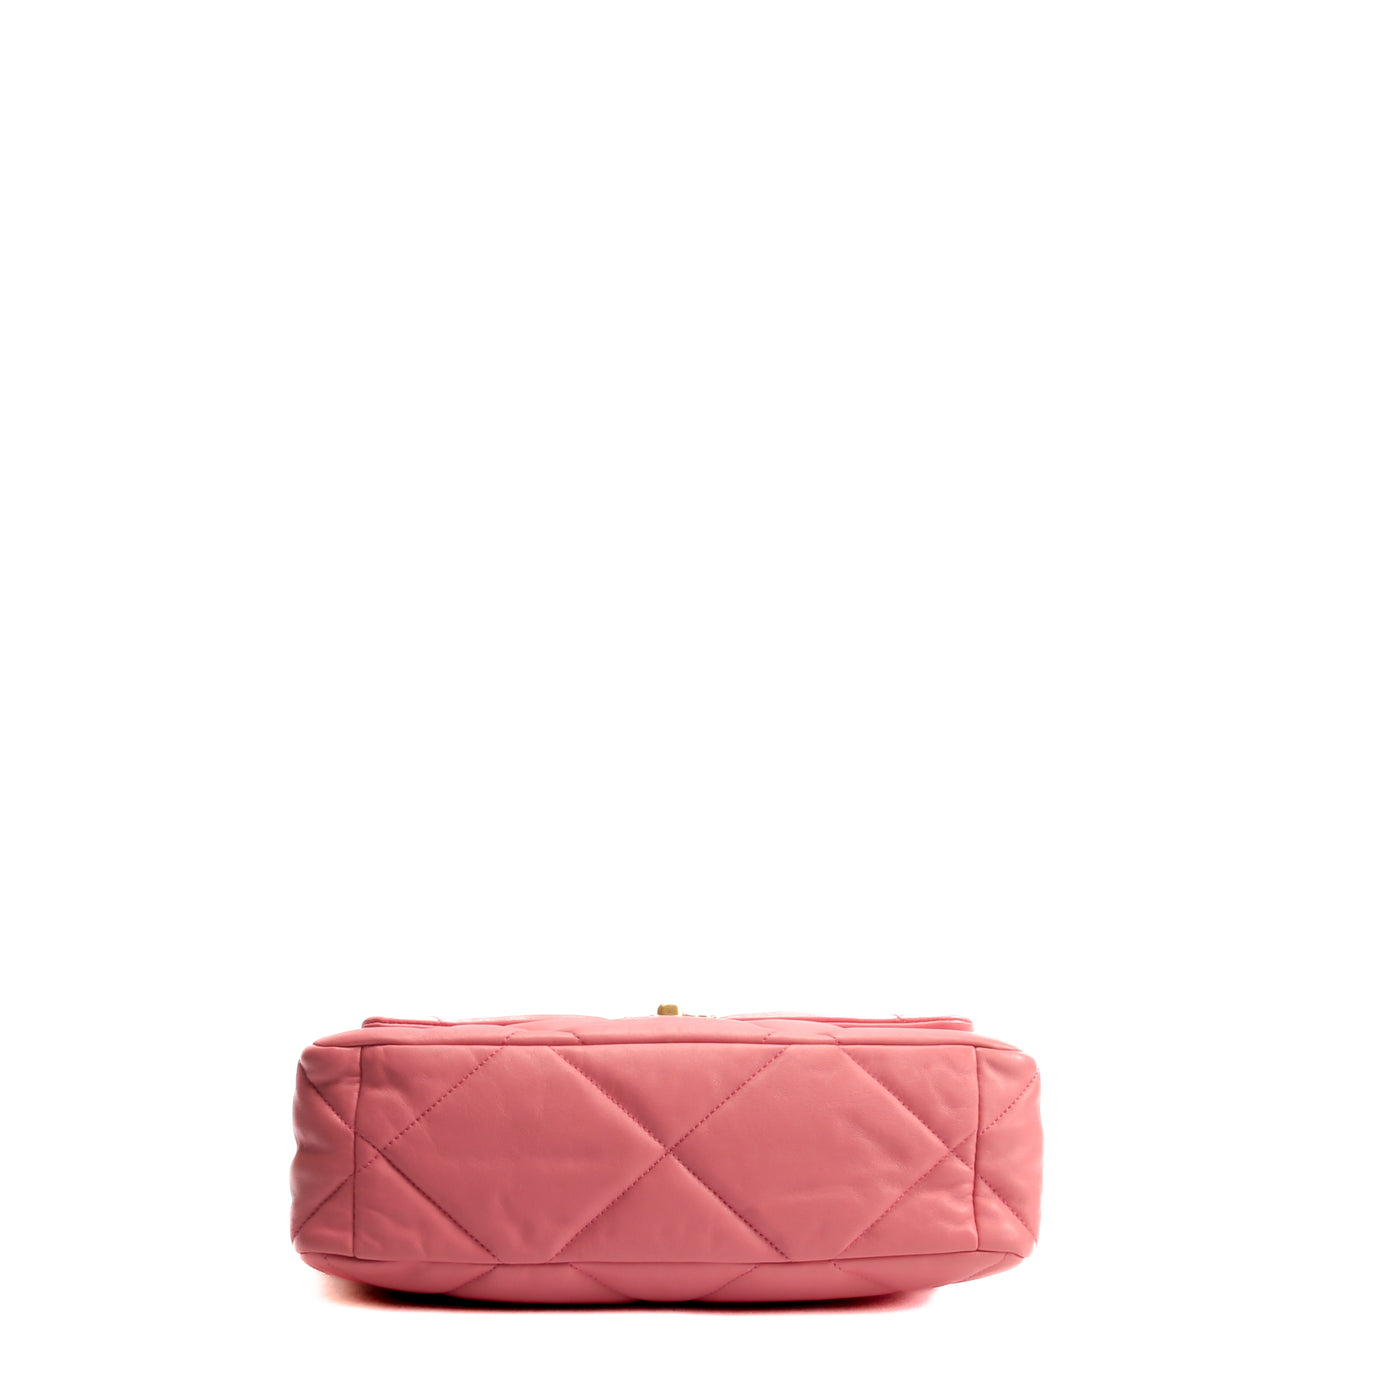 bubble gum pink chanel bag